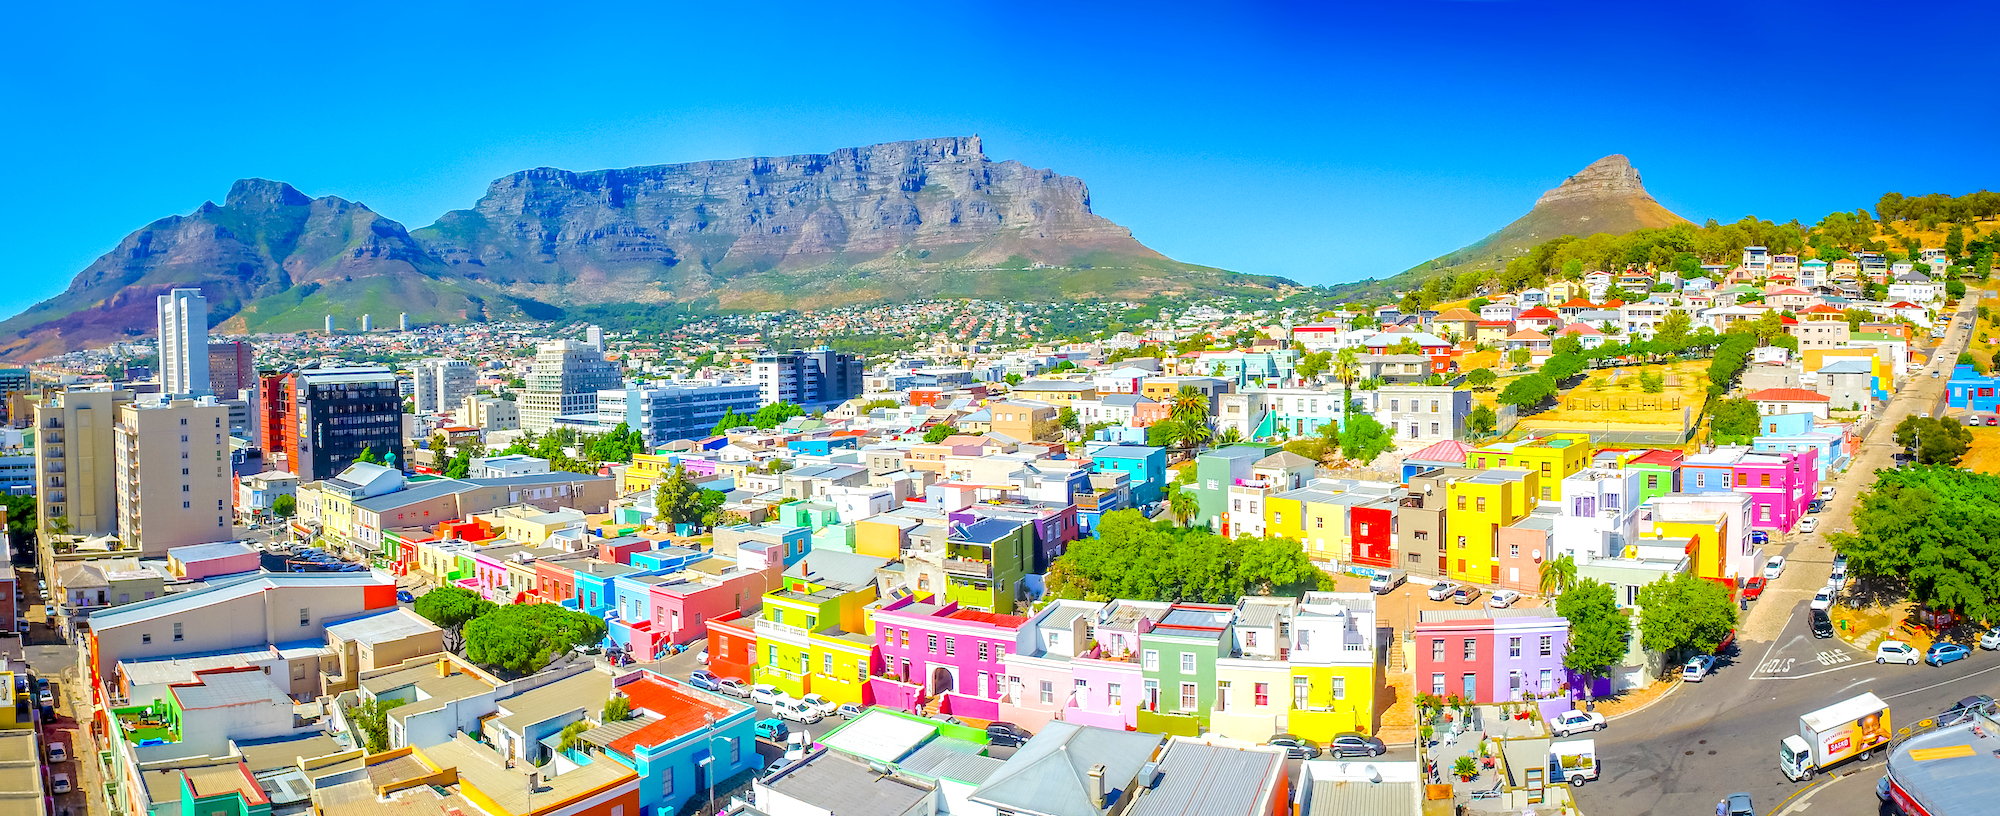 Bo-Kaap: el barrio más colorido de Ciudad del Cabo reflejado en estas bonitas imágenes